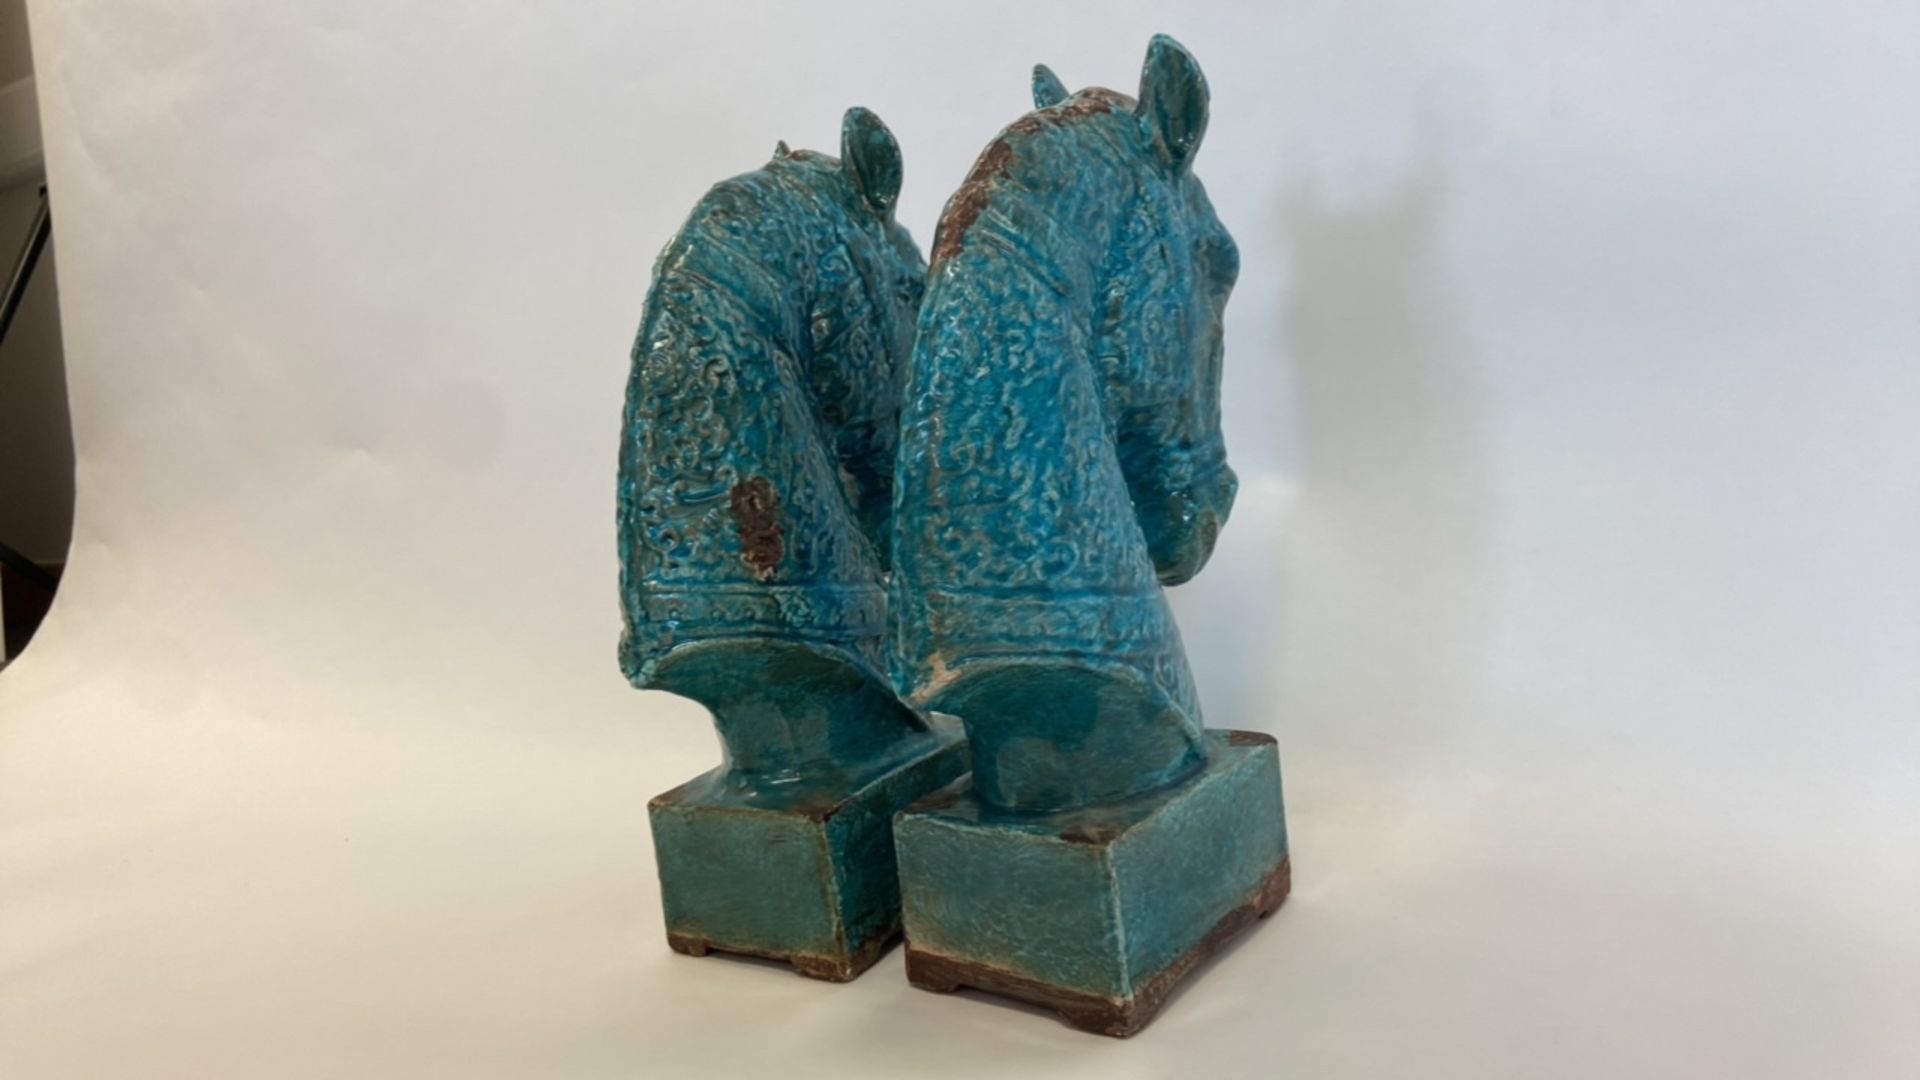 Antique, Handmade Ceramic Horse Statue - Image 6 of 8